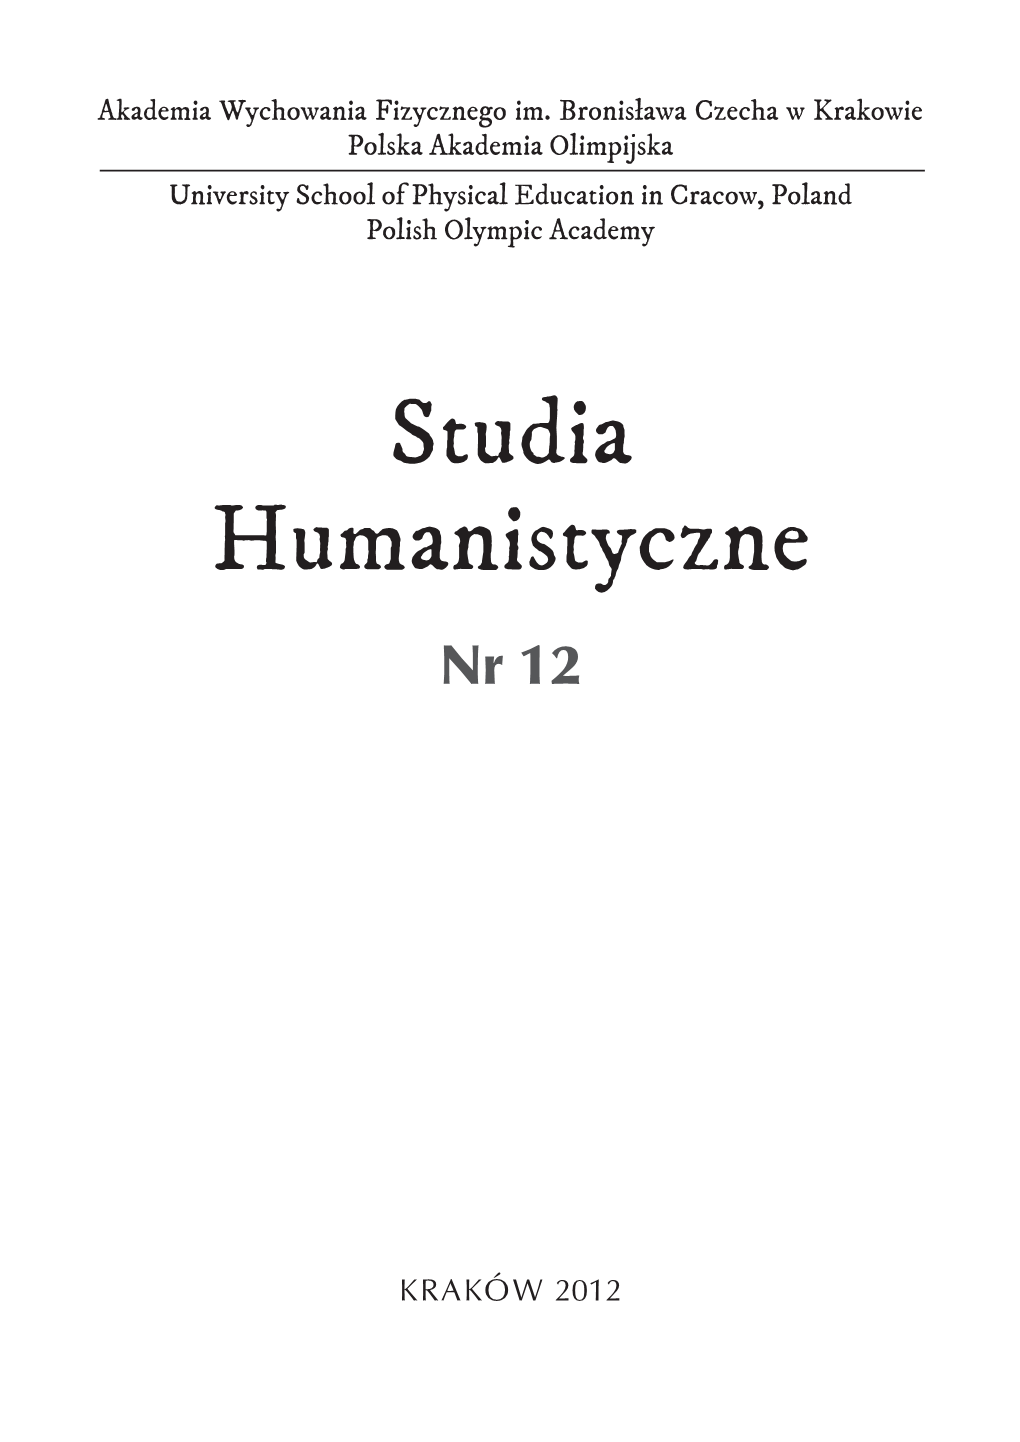 Studia Humanistyczne Nr 12